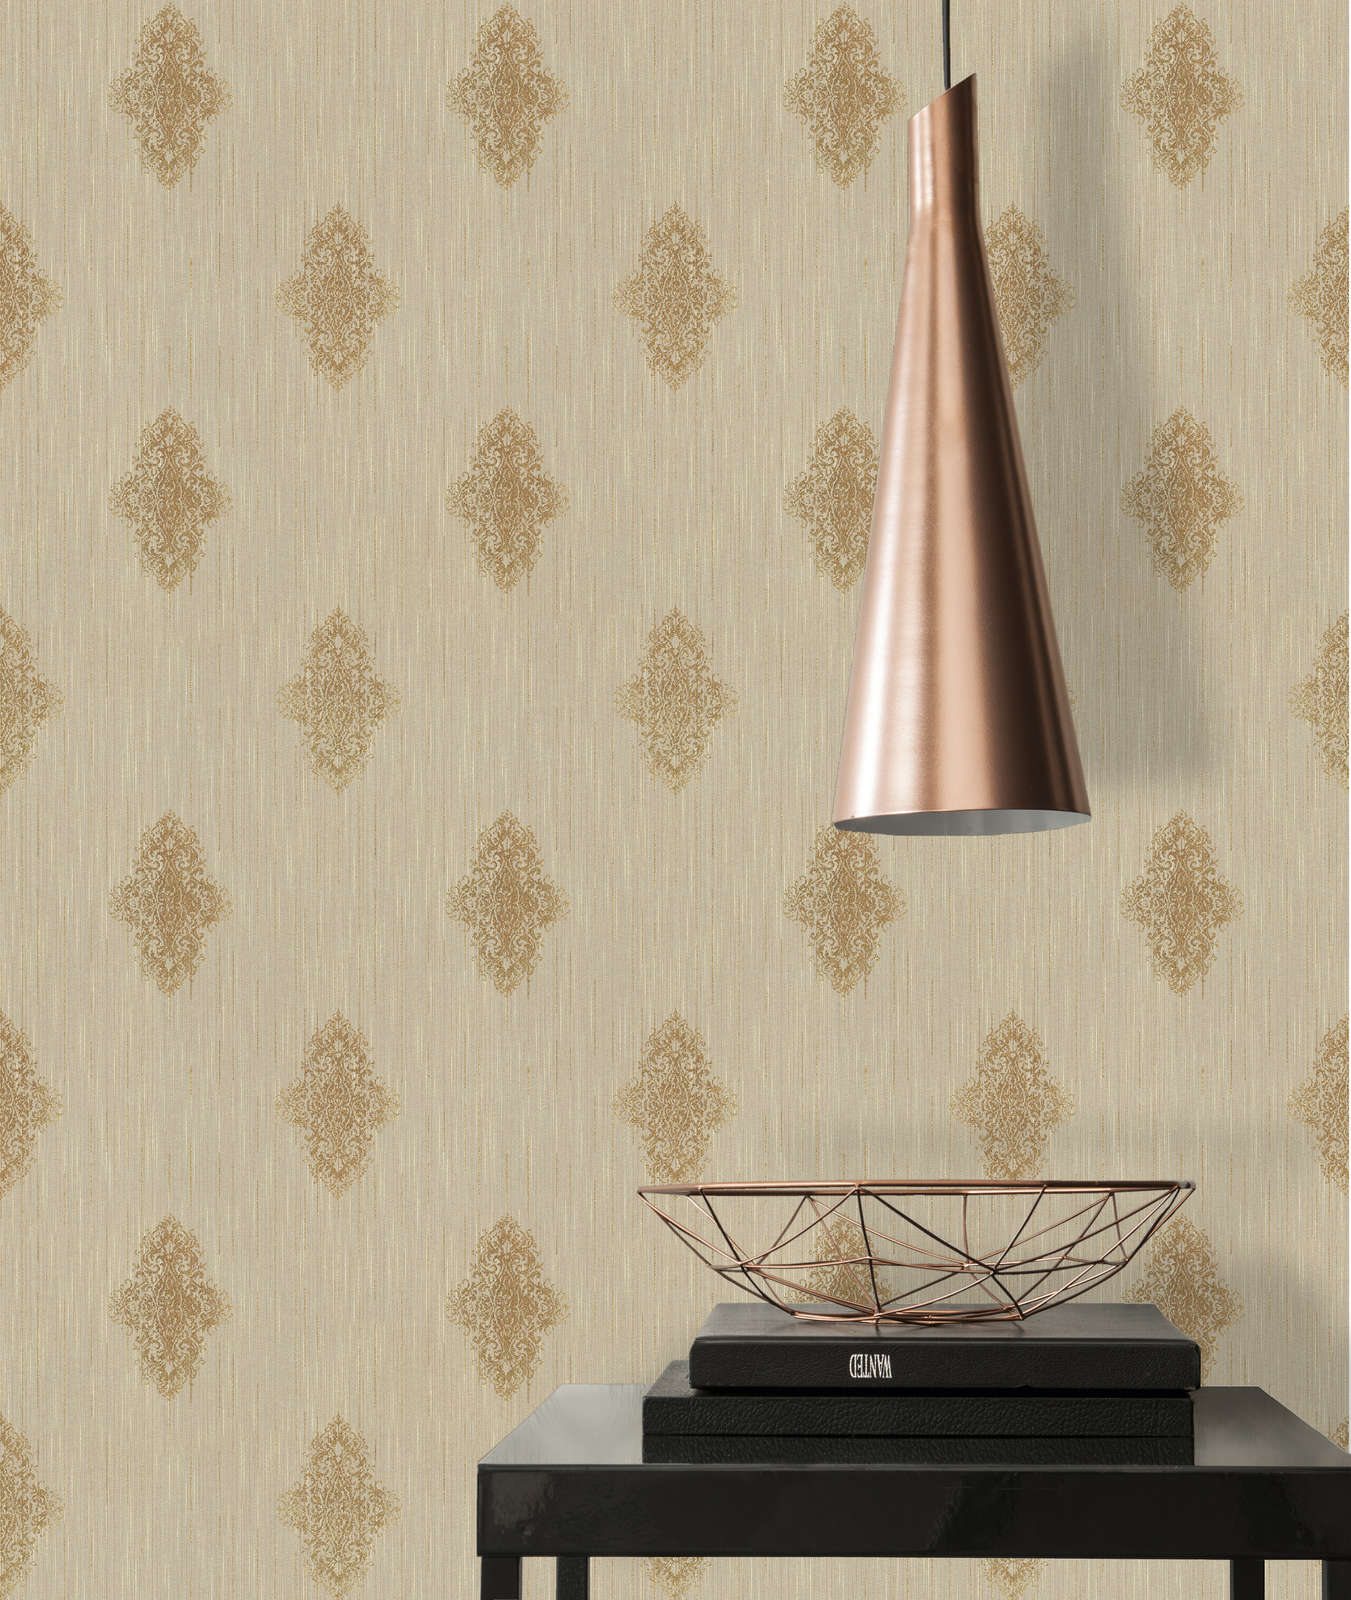             Wallpaper ornament design in used look, metallic effect - beige, bronze
        